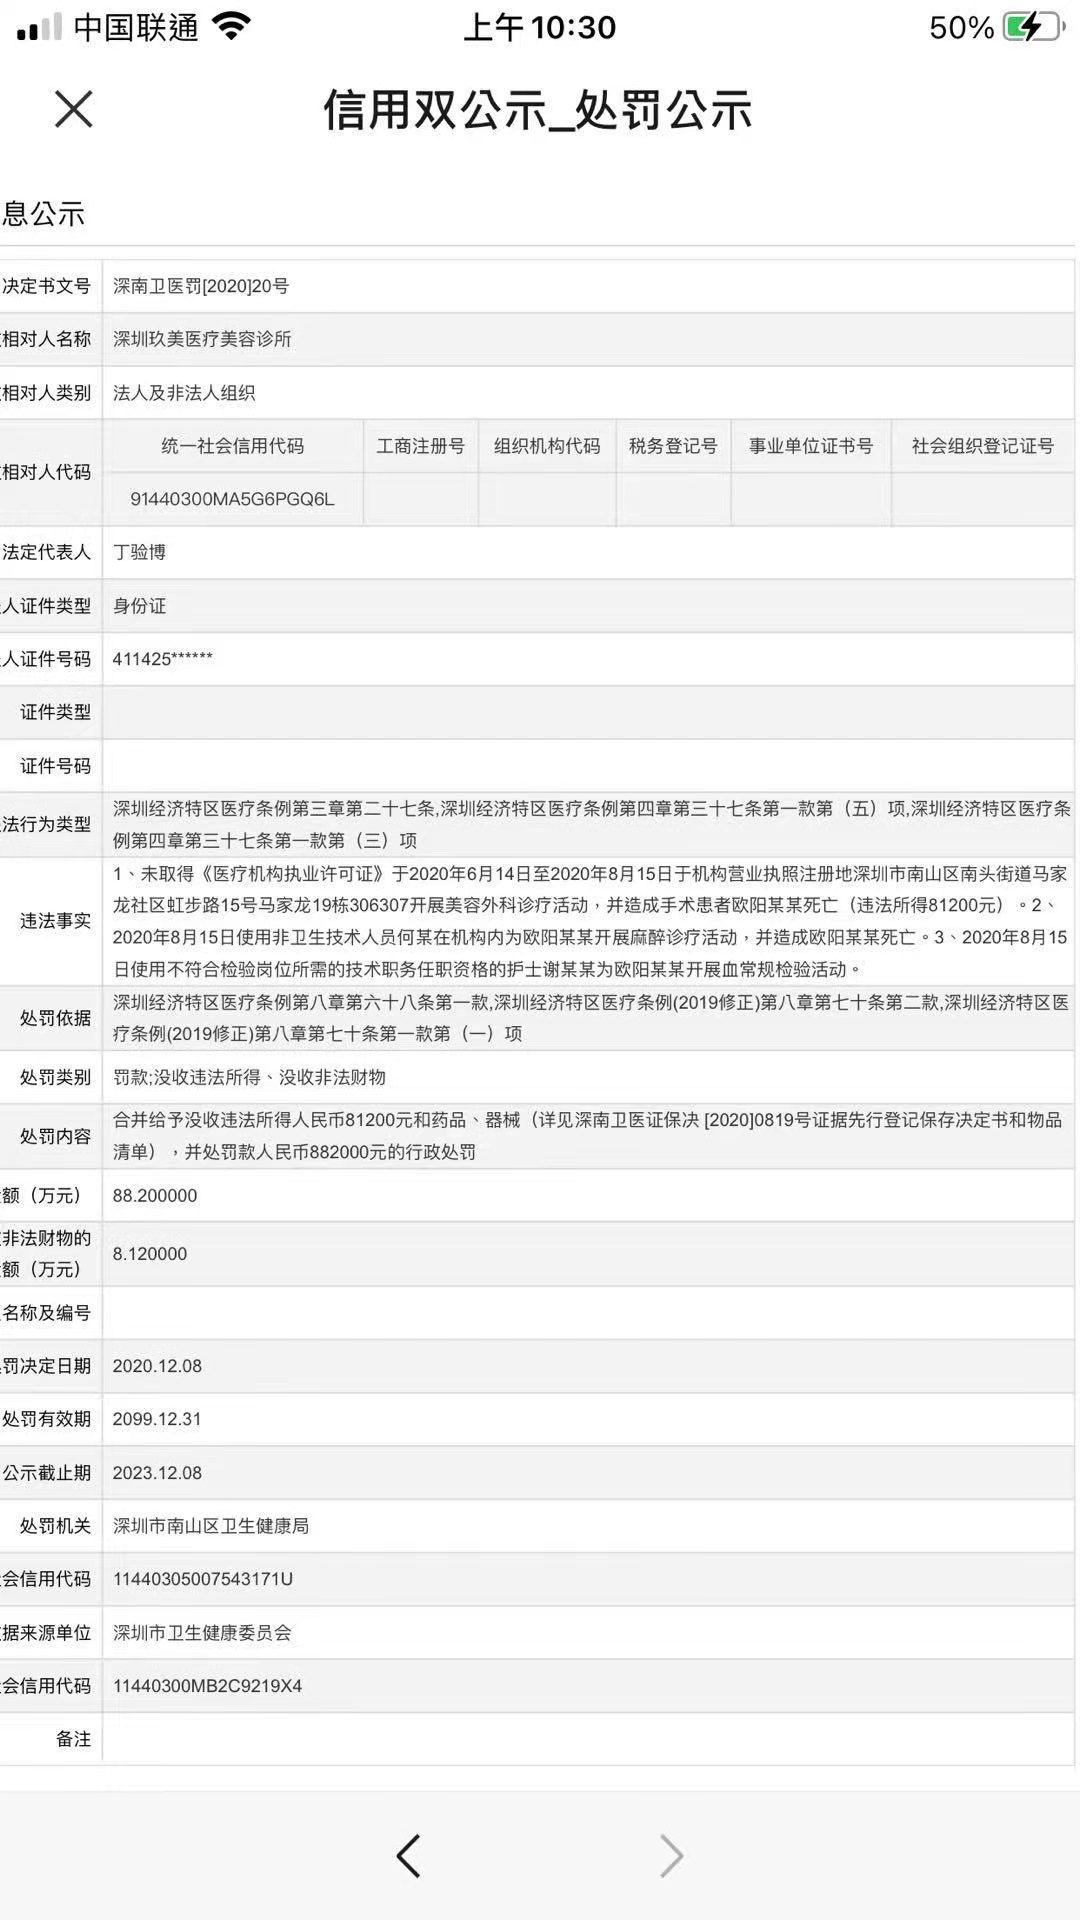 竞博APP深圳36岁女子隆鼻手术中死亡 涉事医美机构及人员均无资质(图1)